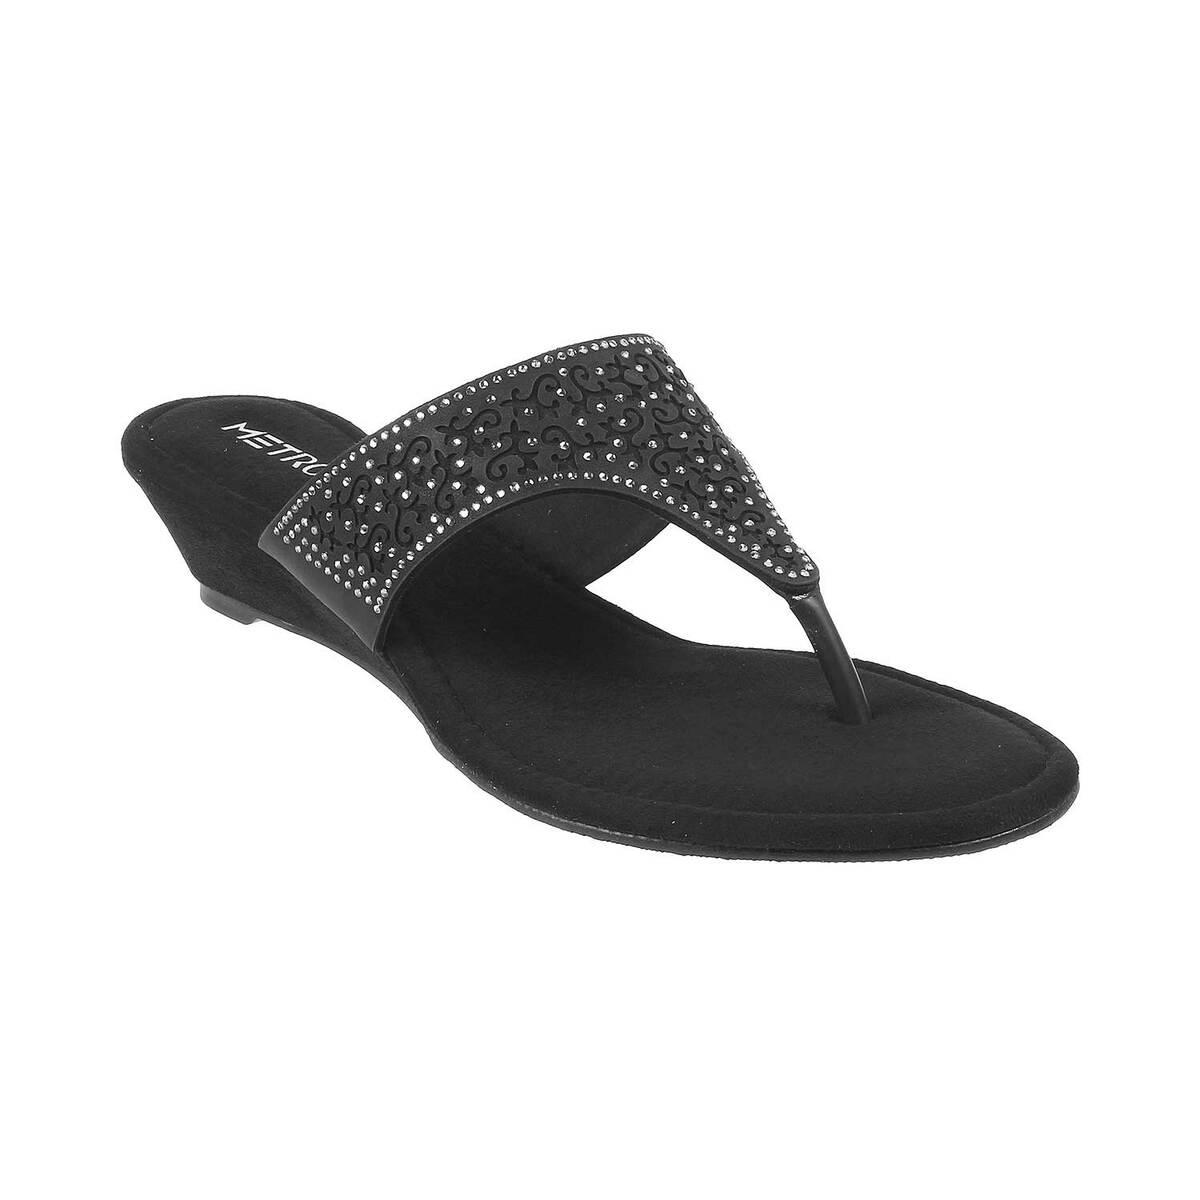 Buy Women Black Ethnic Sandals Online | SKU: 35-15-11-36-Metro ...